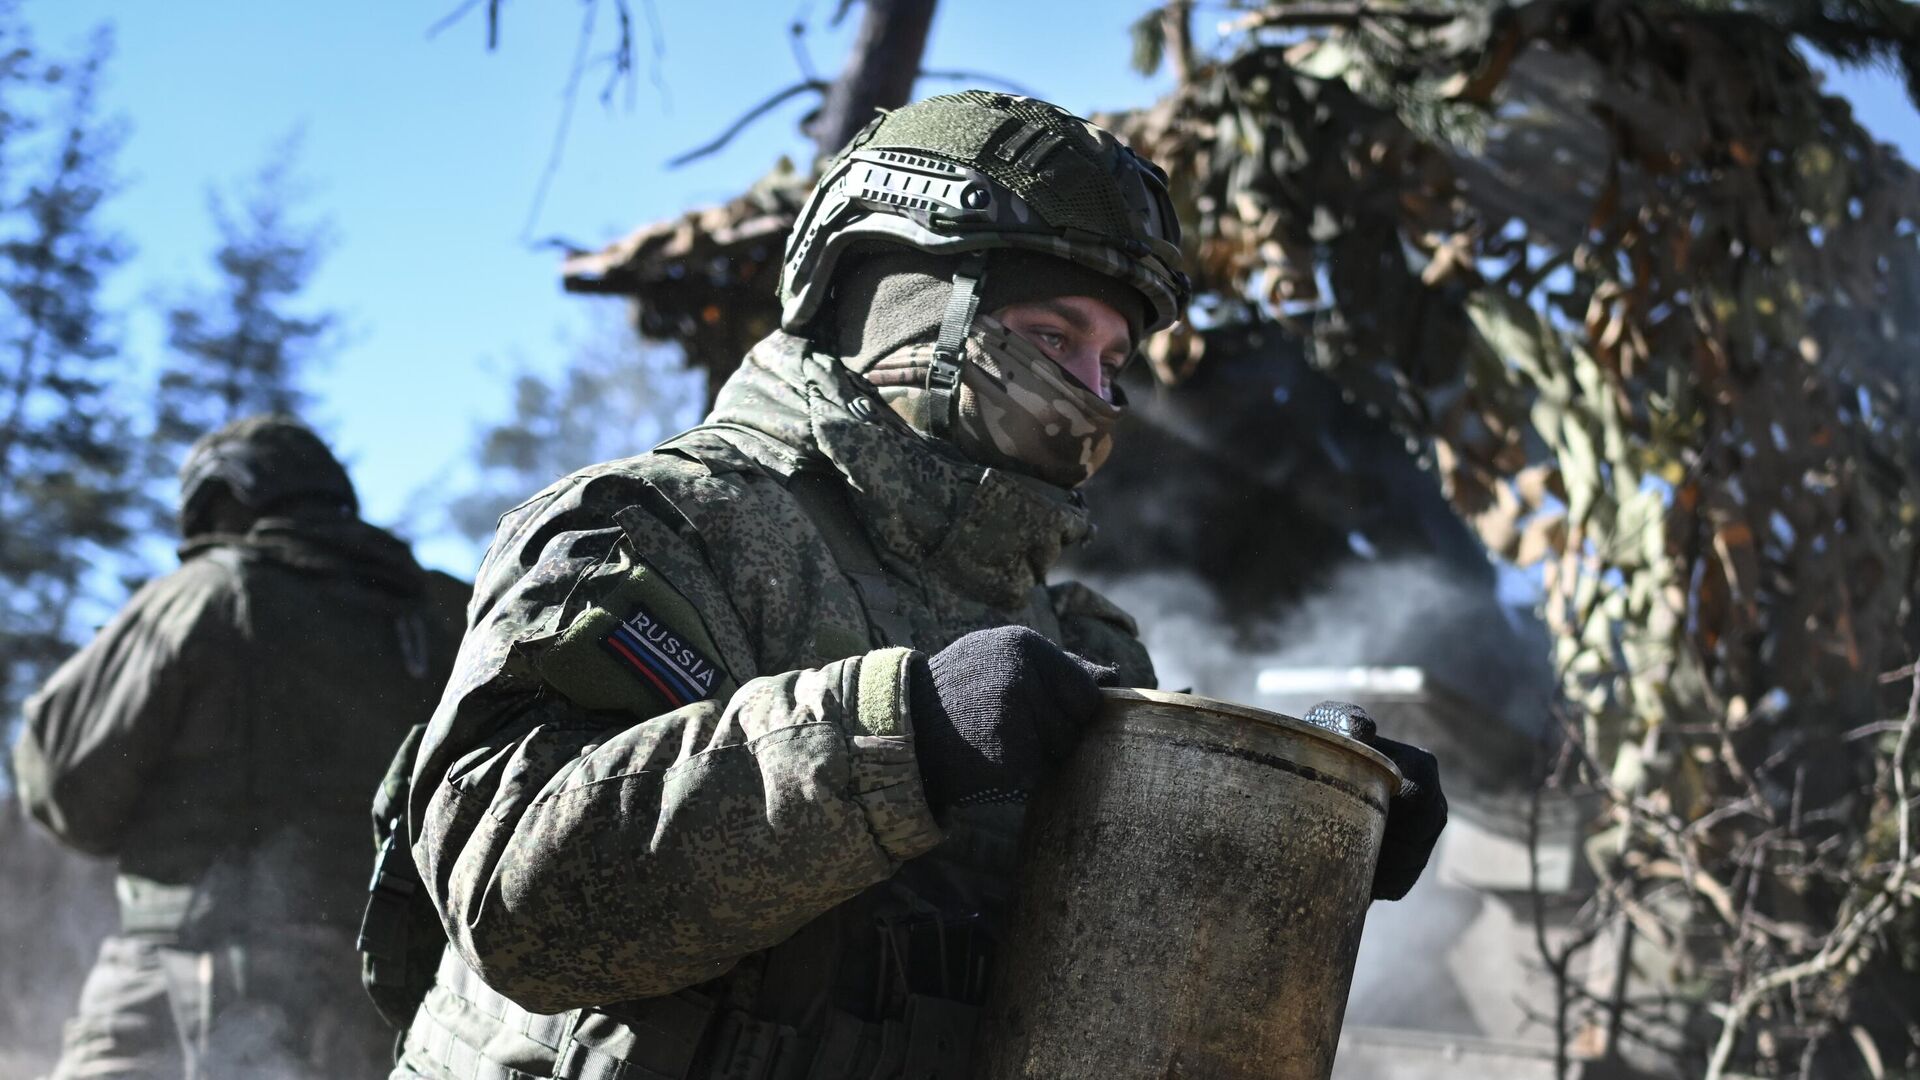 Артиллерийское подразделение Центрального военного округа ведет боевую работу с использованием САУ "Гиацинт-С" в ходе контрбатарейной борьбы на Авдеевском направлении спецоперации